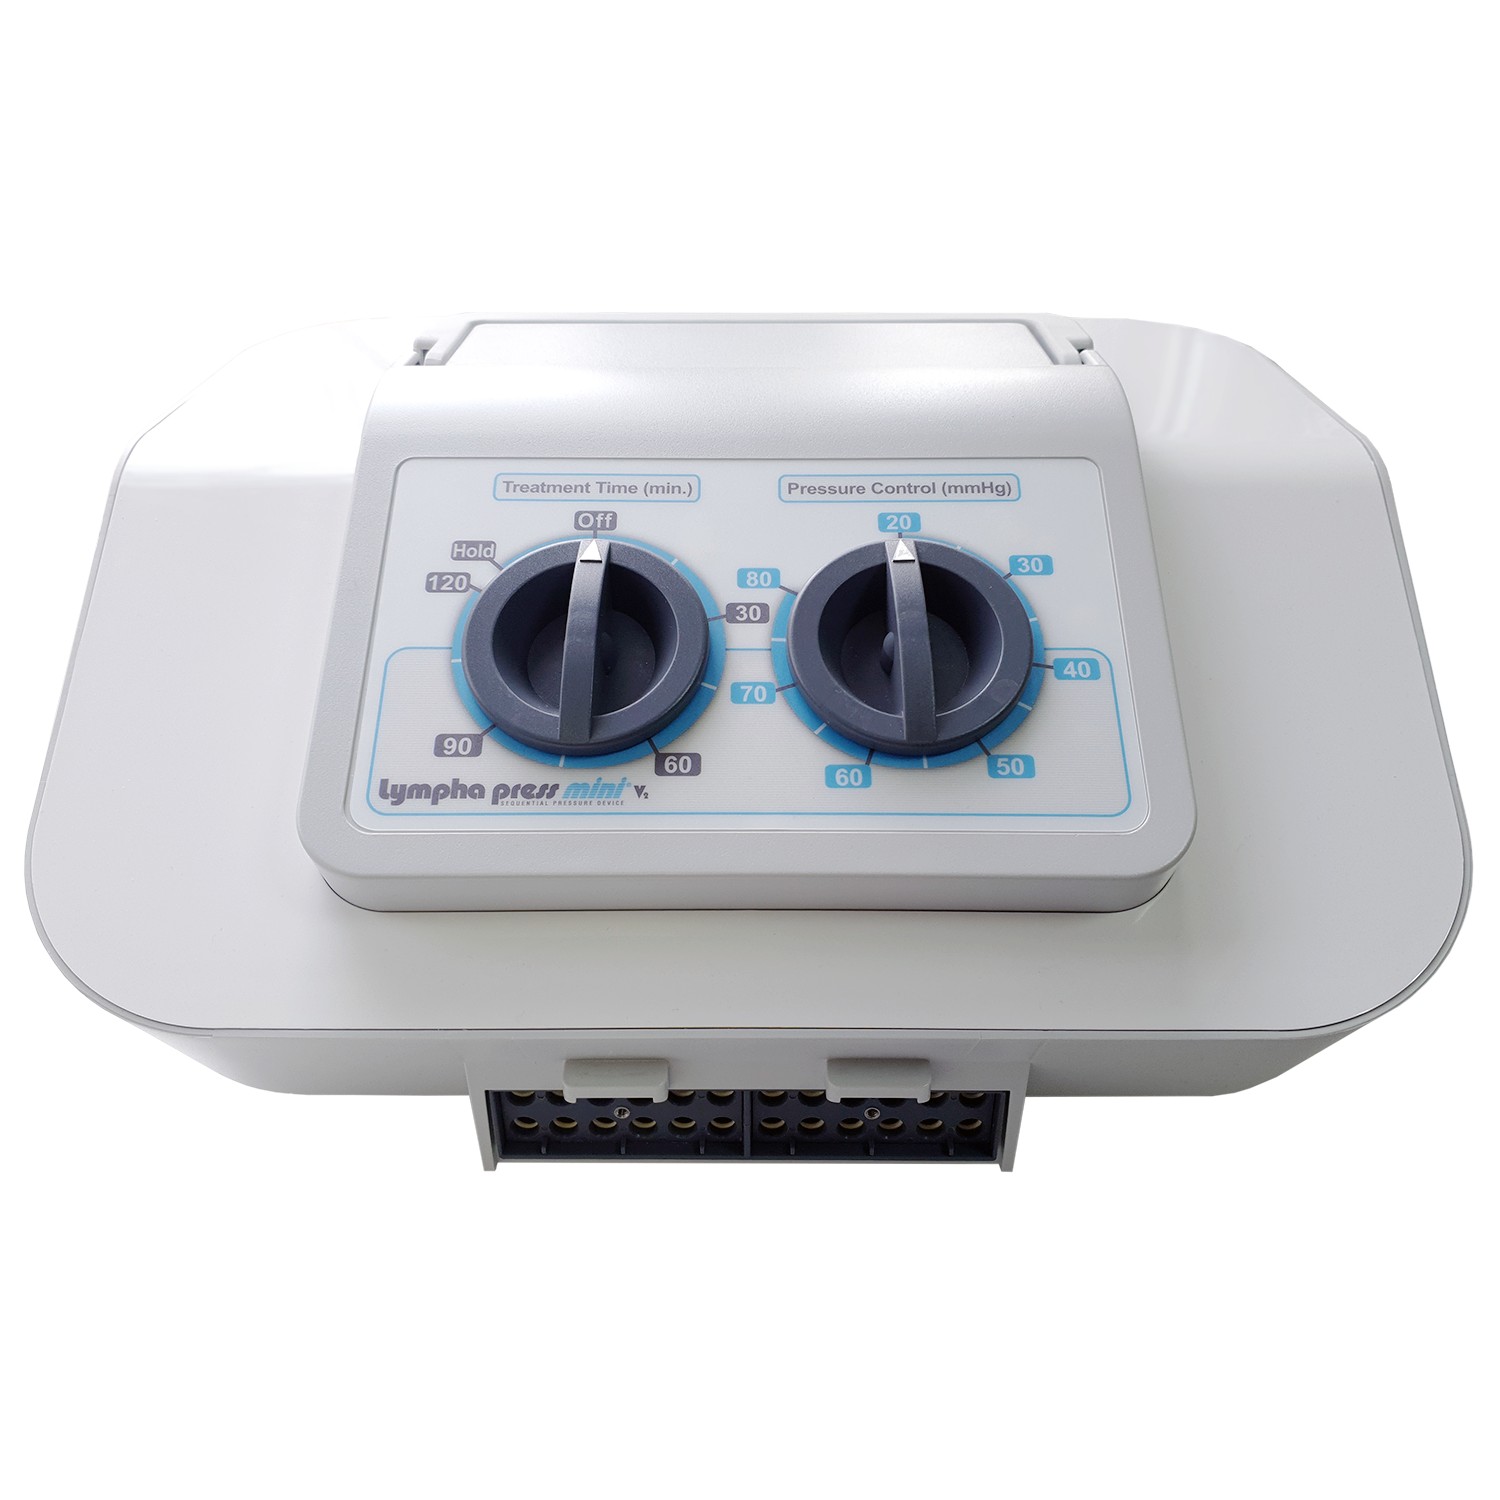 Лимфодренажный аппарат Mego Afek Lympha Press Mini белый корпус 24K